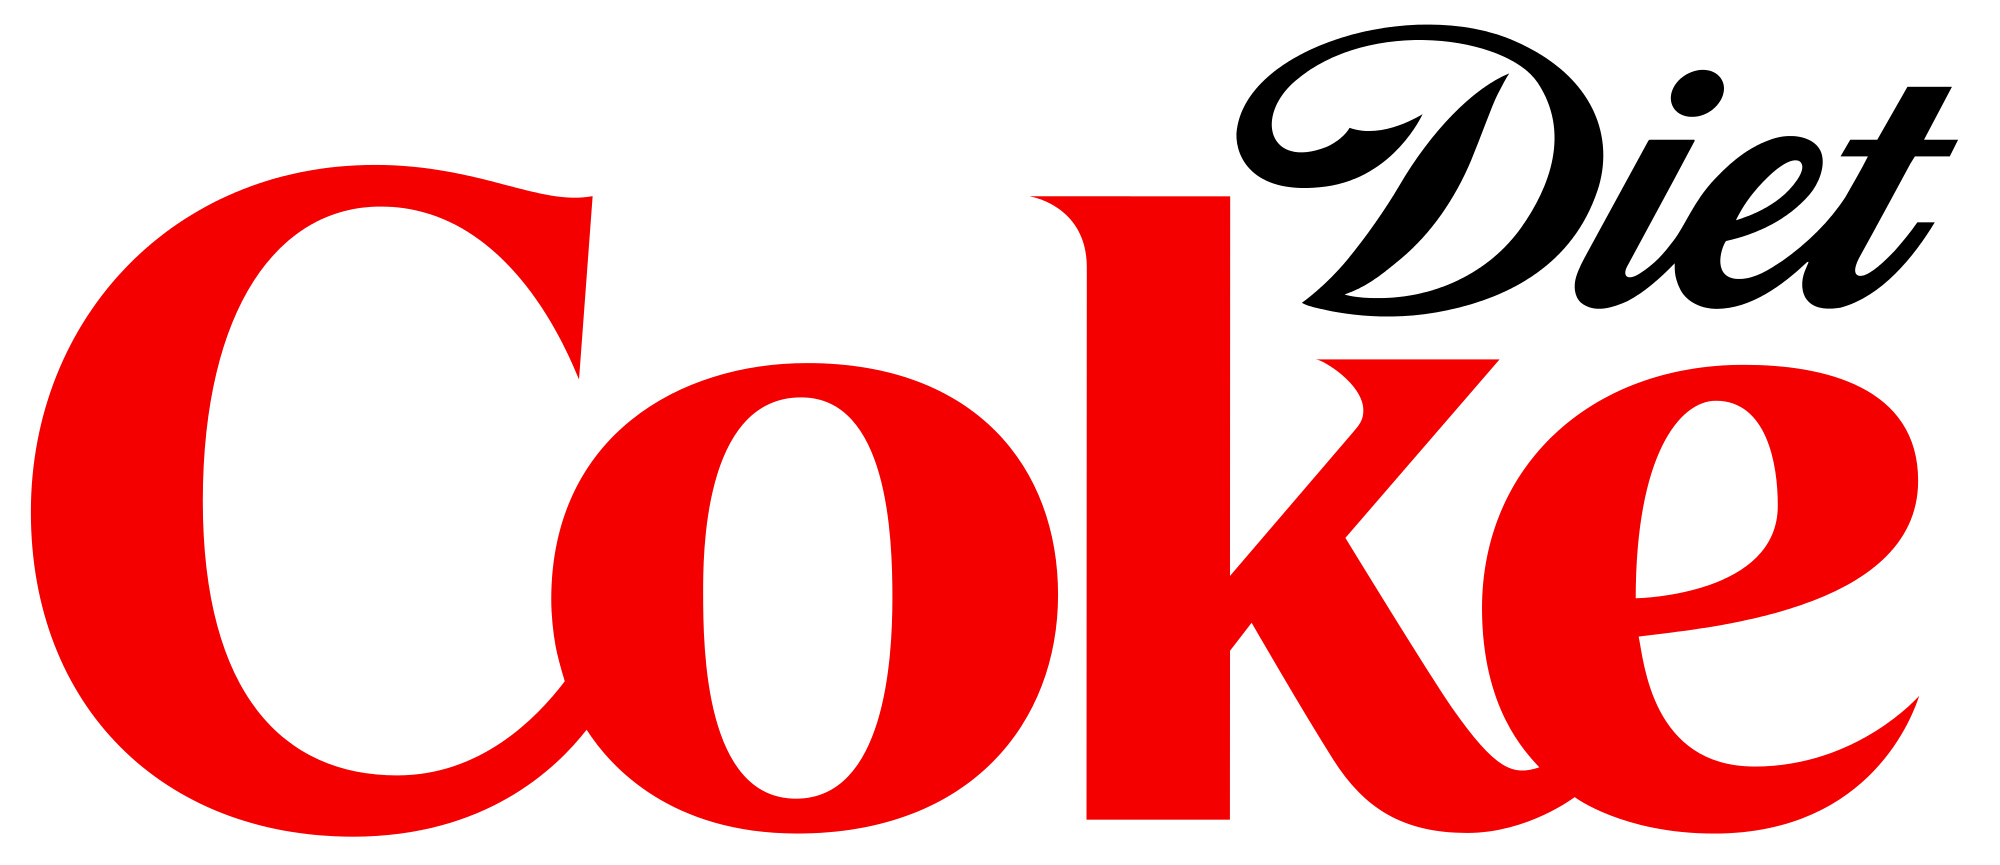 Diet Coke Logo Transparent Images